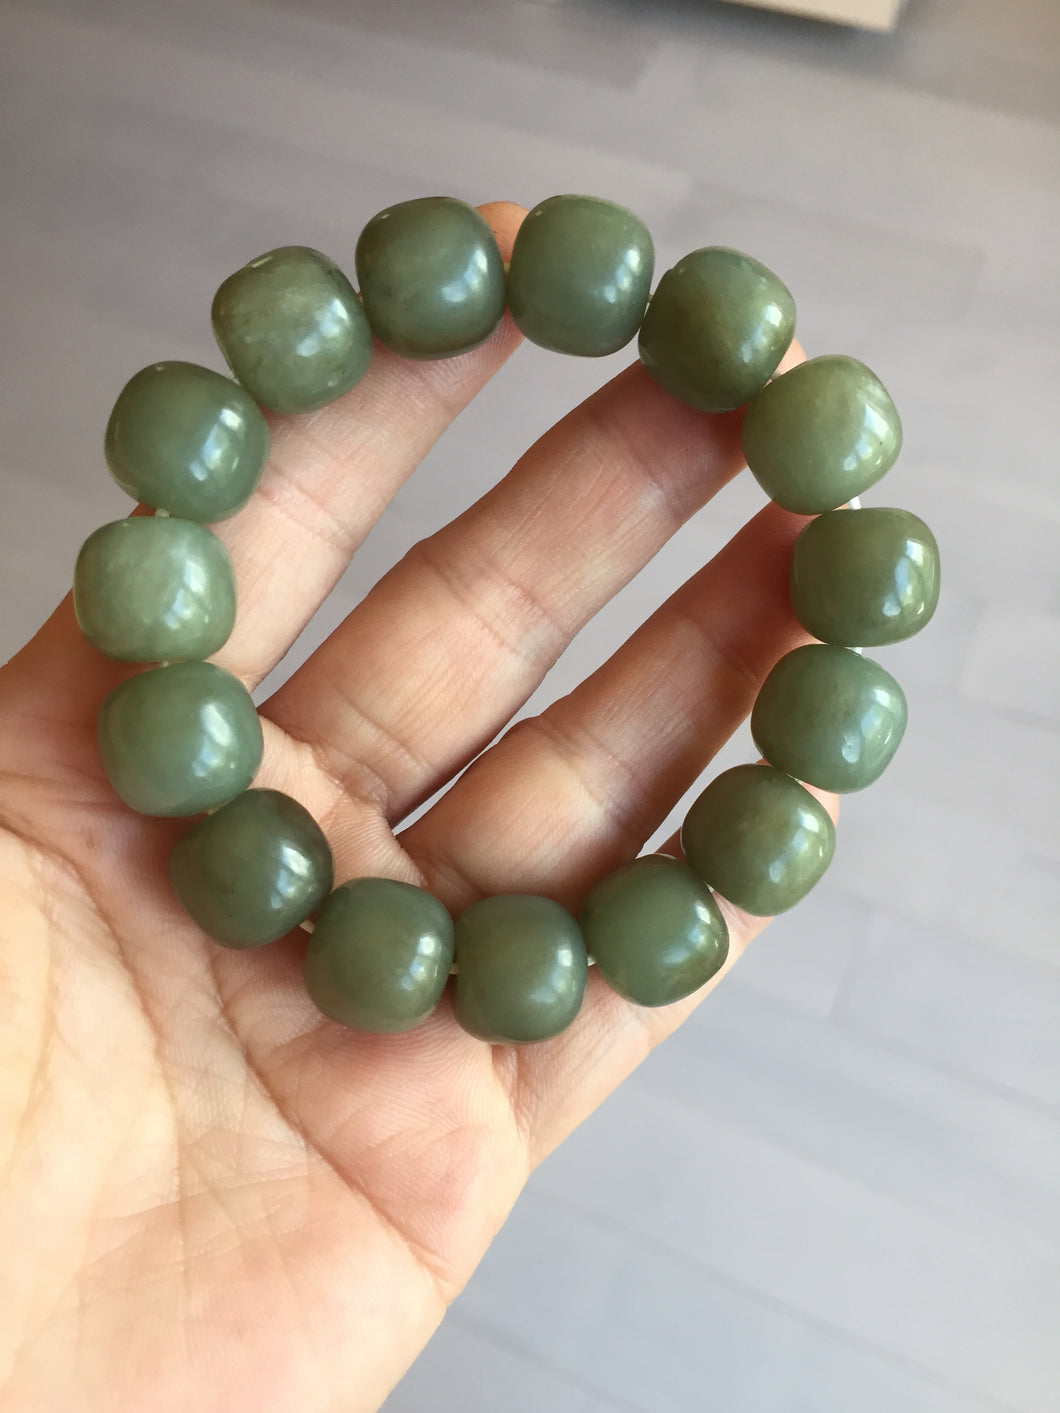 100% Natural 13.8x12.5mm dark green/gray/brown vintage style nephrite Hetian Jade bead bracelet HF76